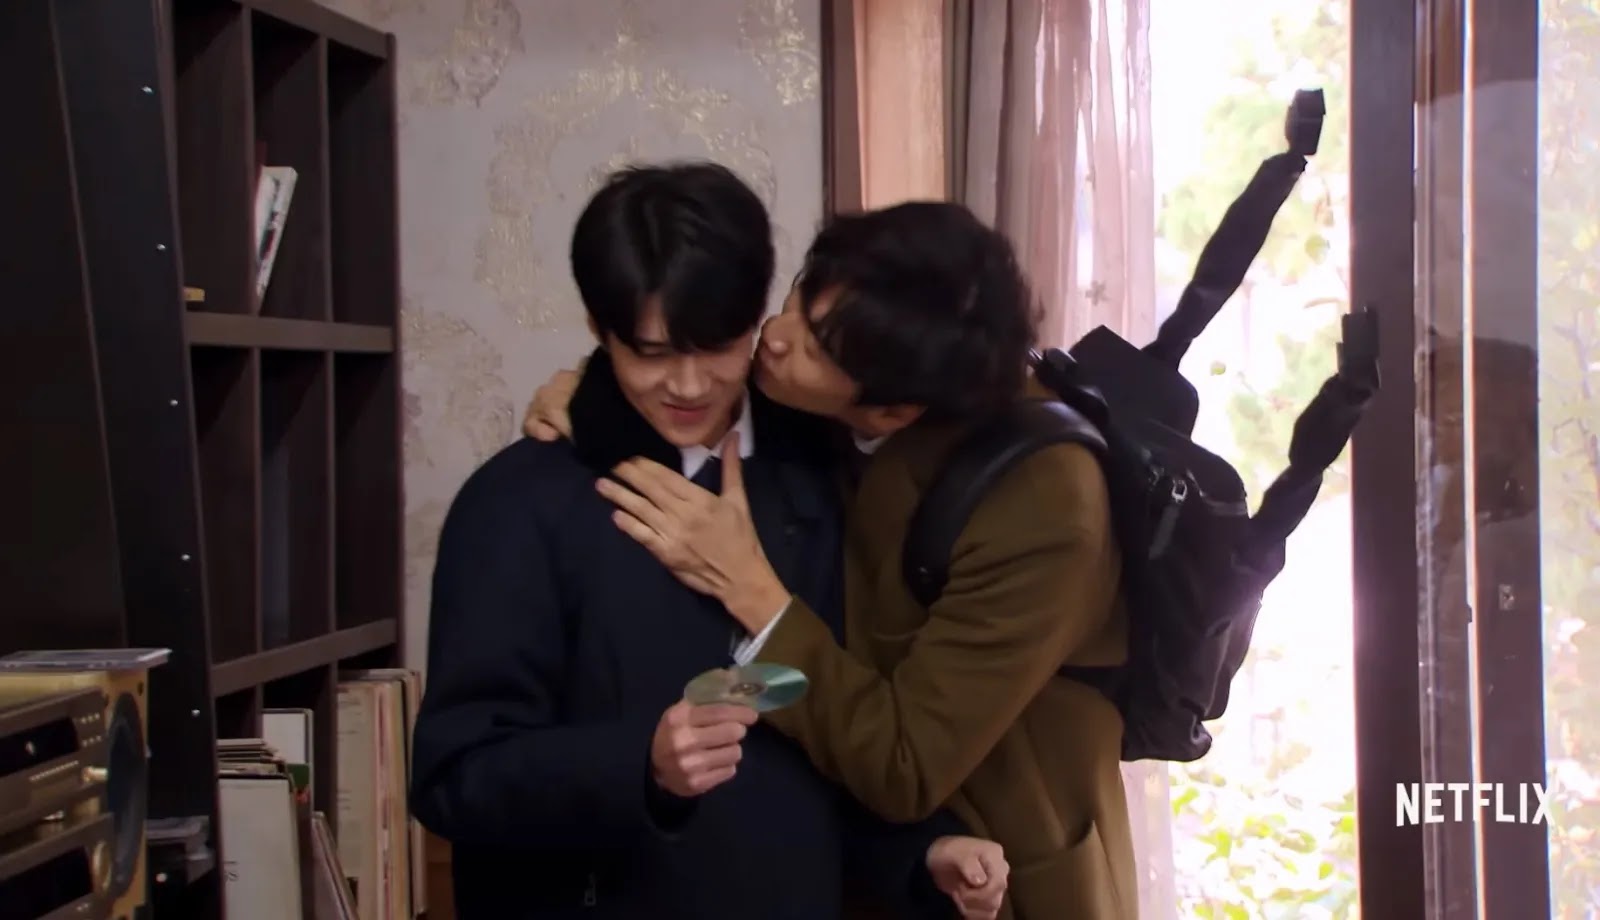 Primeiras impressões de O Jogo do Detetive, show de variedades coreano  original Netflix - Elfo Livre